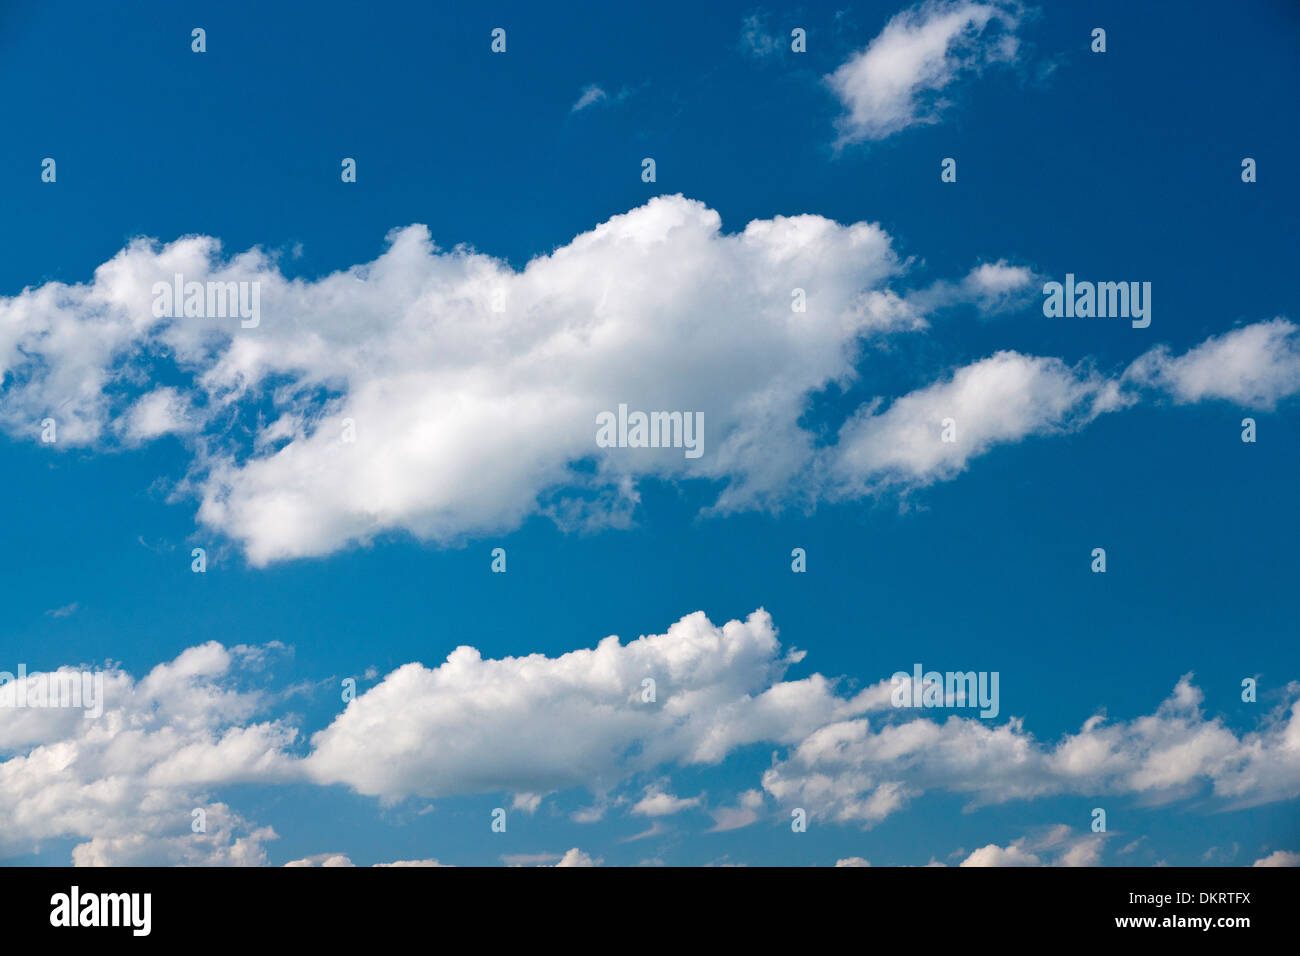 Deutschland, Europa, Himmel, blauer Himmel, Wolken, Schäfchenwolken, Cumulus-Wolken, Cumulus, Bildung, blau, weiß, Wetter, Wolke Stockfoto